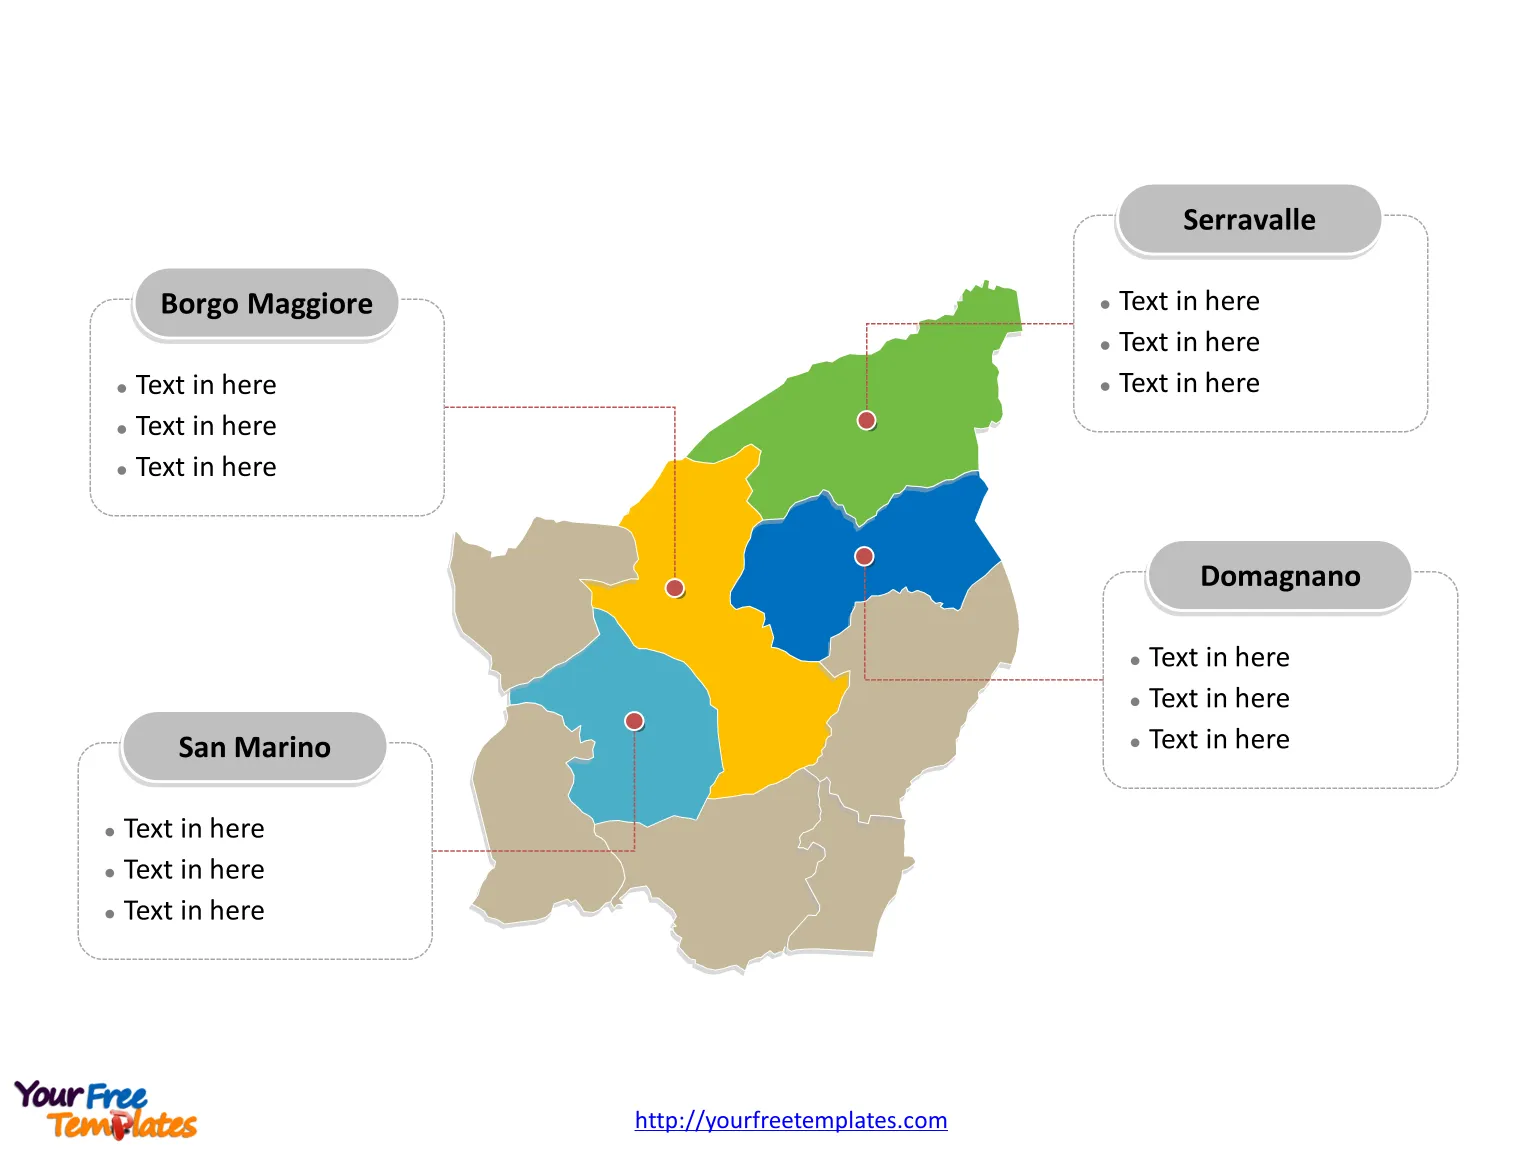 San Marino Municipality map labeled with major municipalities